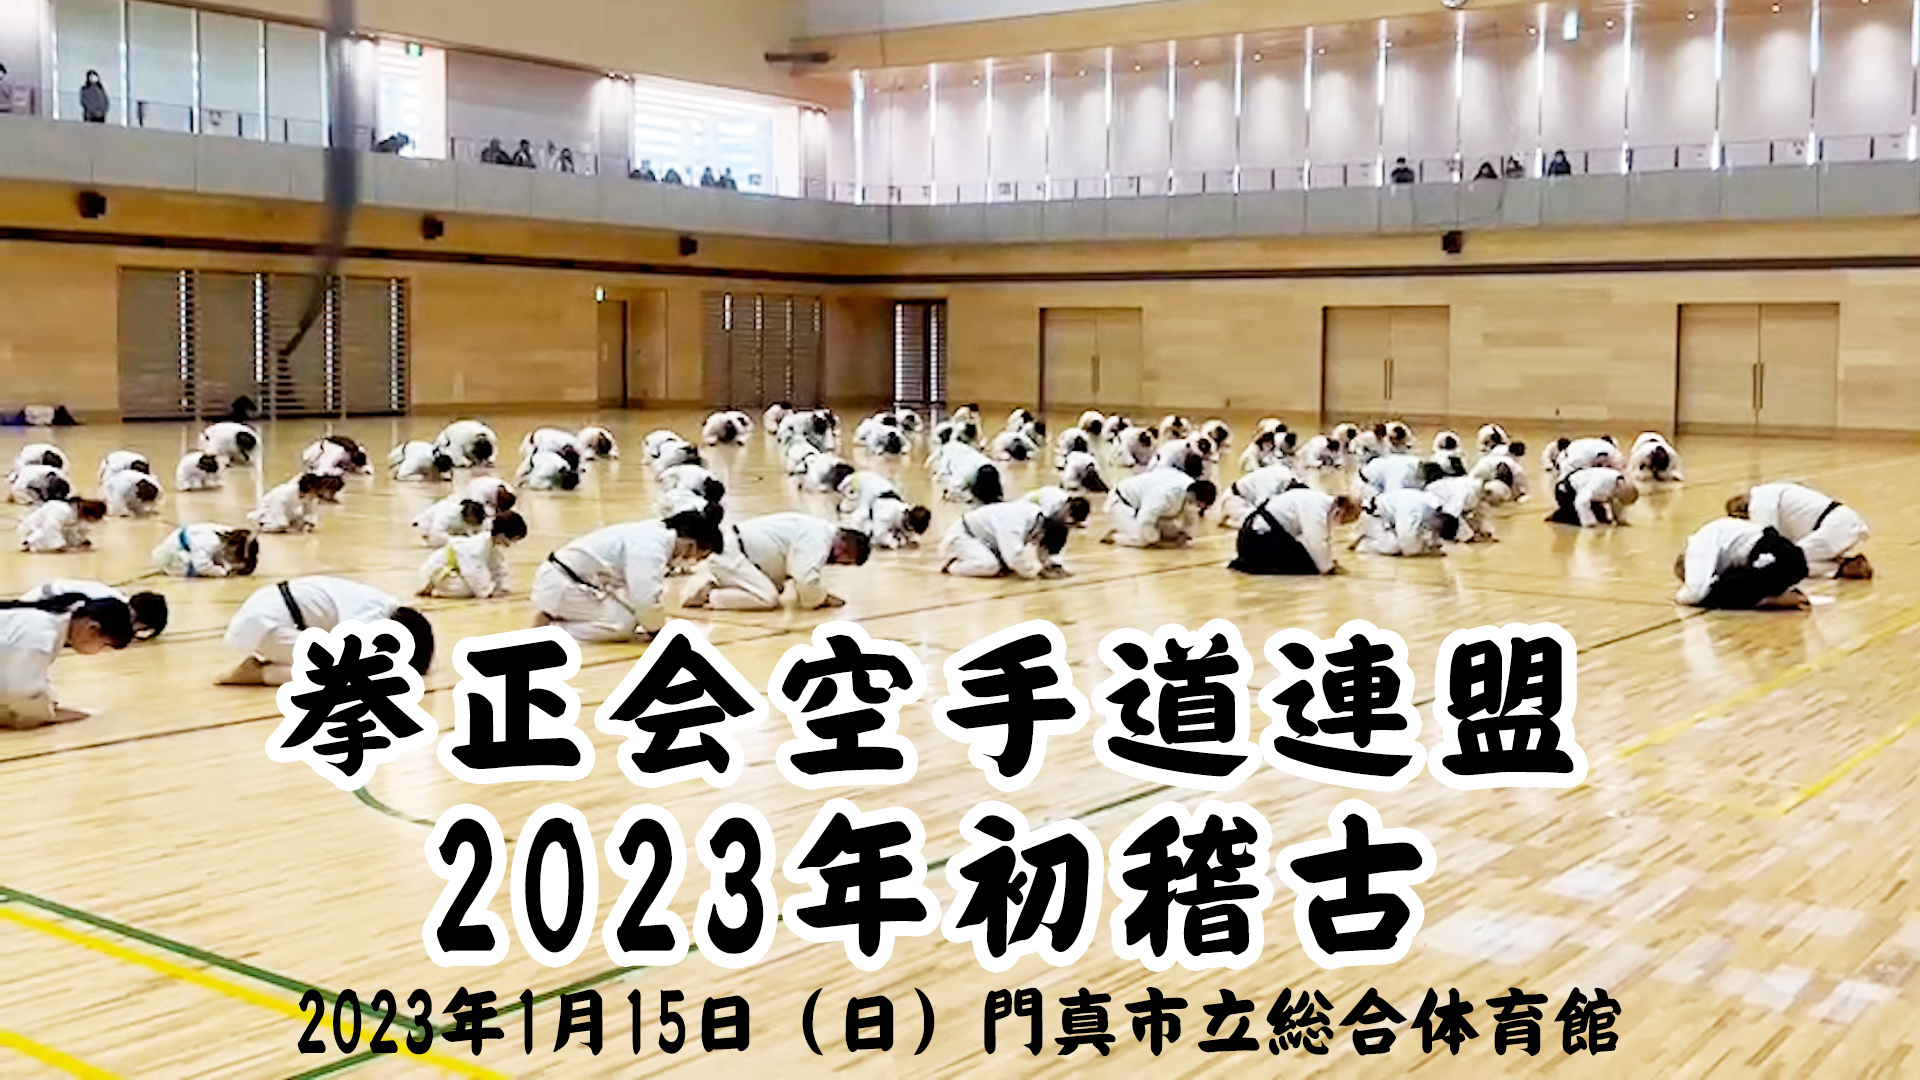 2023年初稽古 拳正会空手道連盟